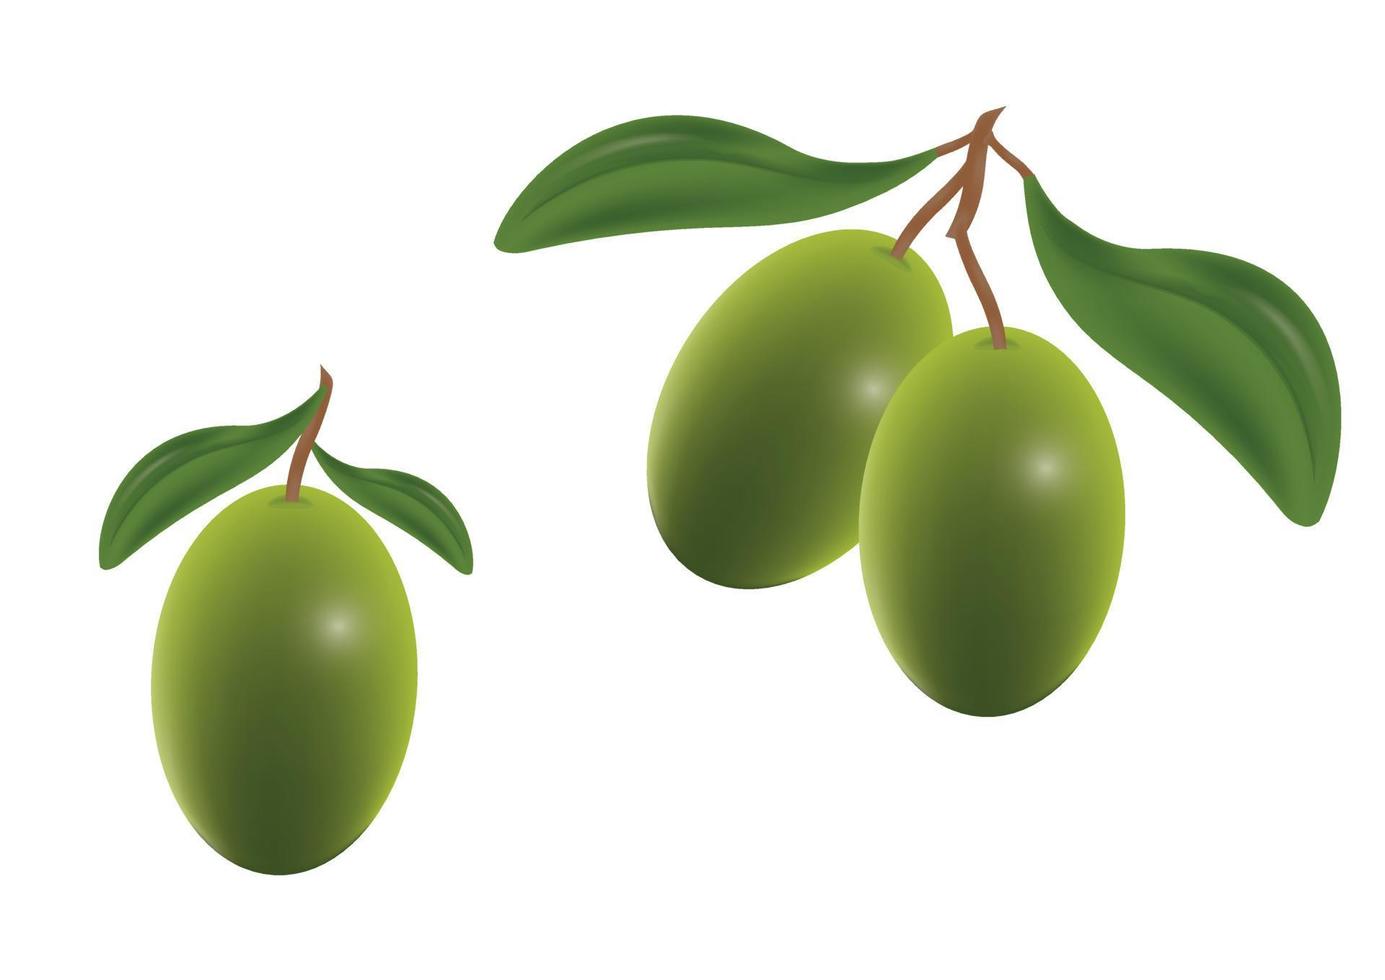 Clipart-Vektor-Olive isoliert auf weißem Hintergrund. Grüne Olive vektor